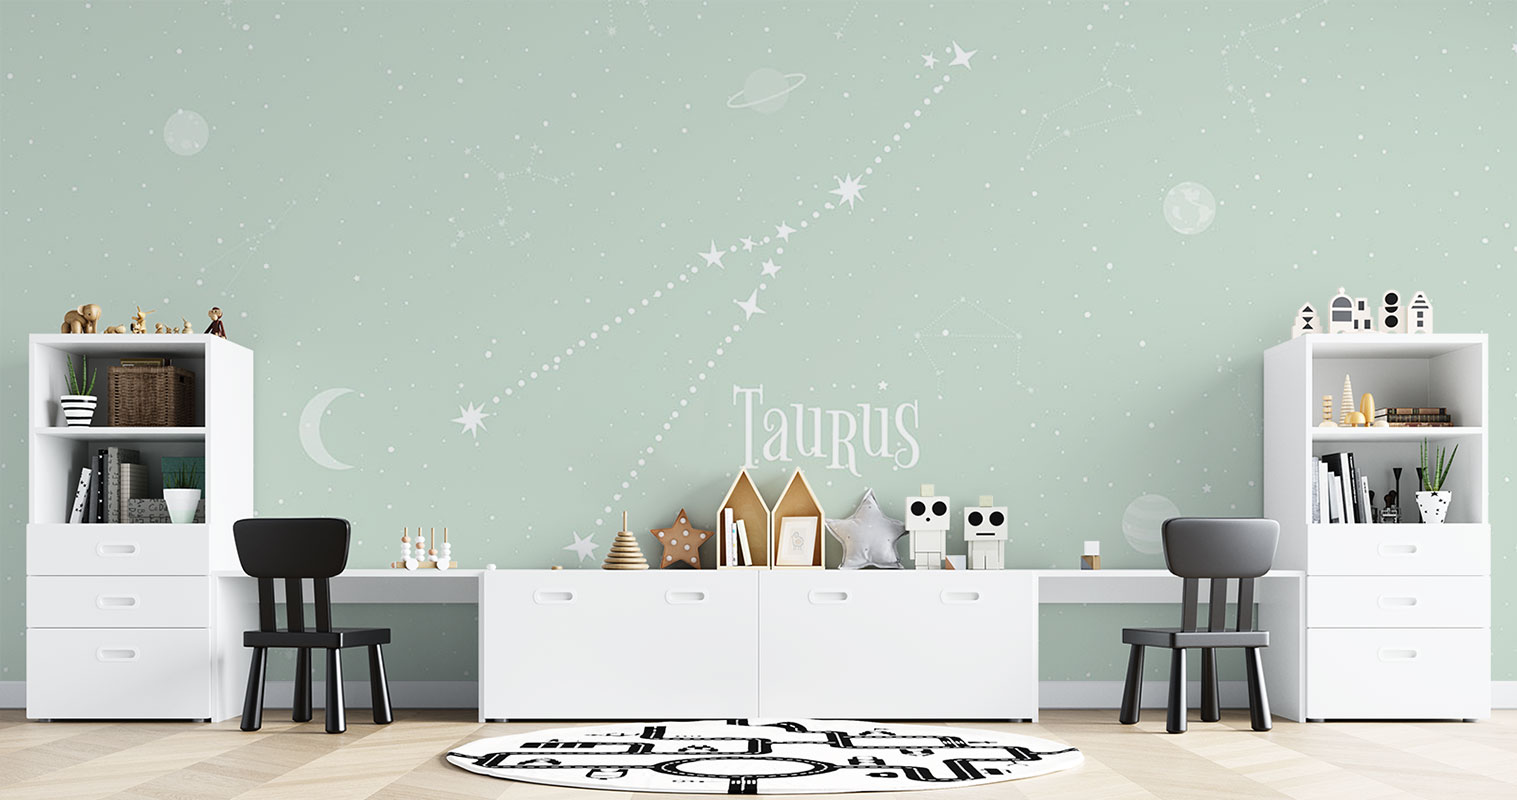 Horoscope Taurus – Light Green